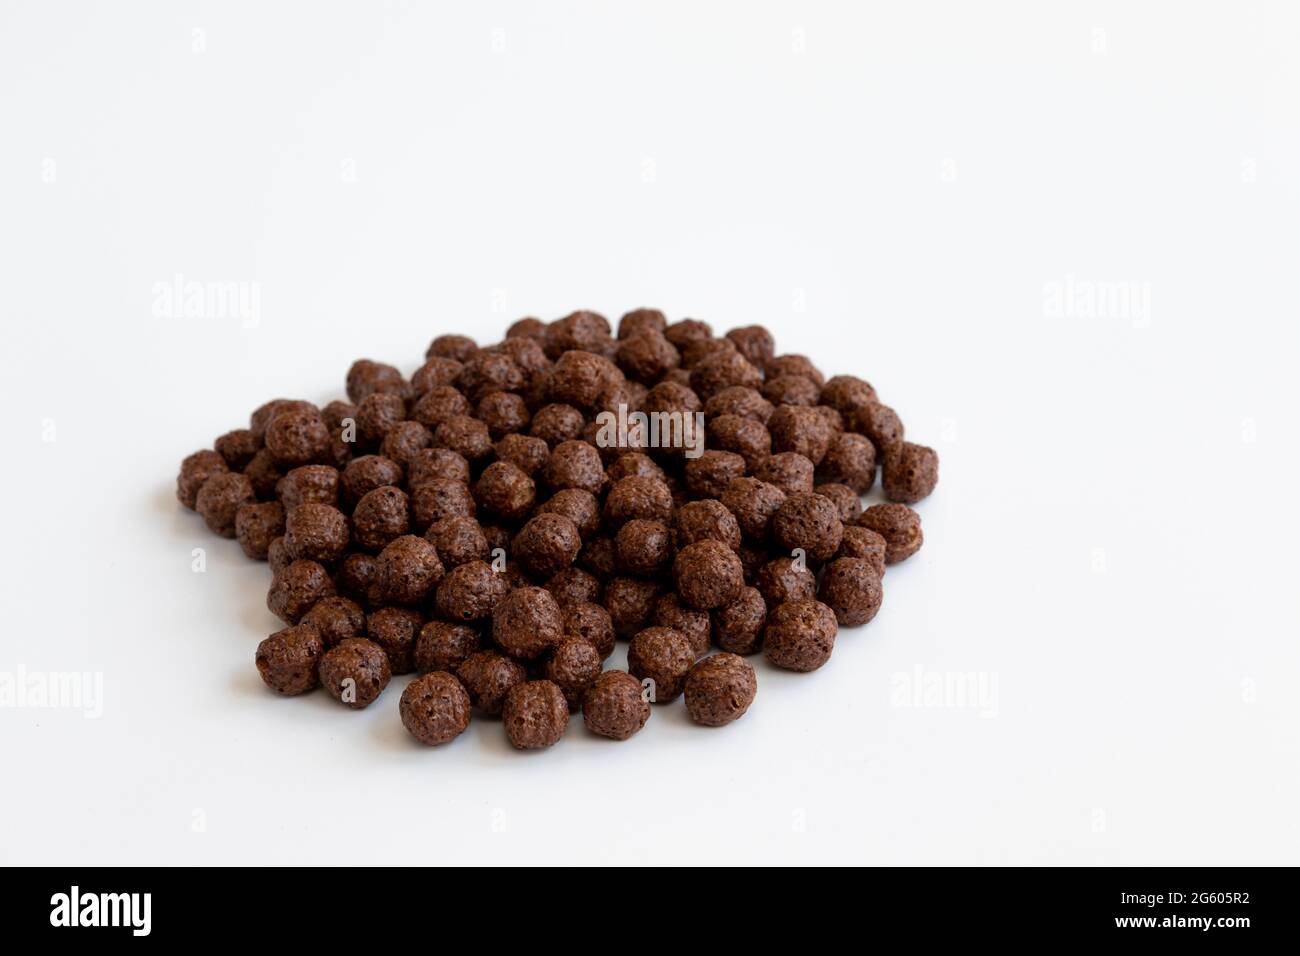 bolas crujientes de cereales de chocolate aisladas sobre fondo blanco, bolas secas de chocolate desayuno con sabor Foto de stock